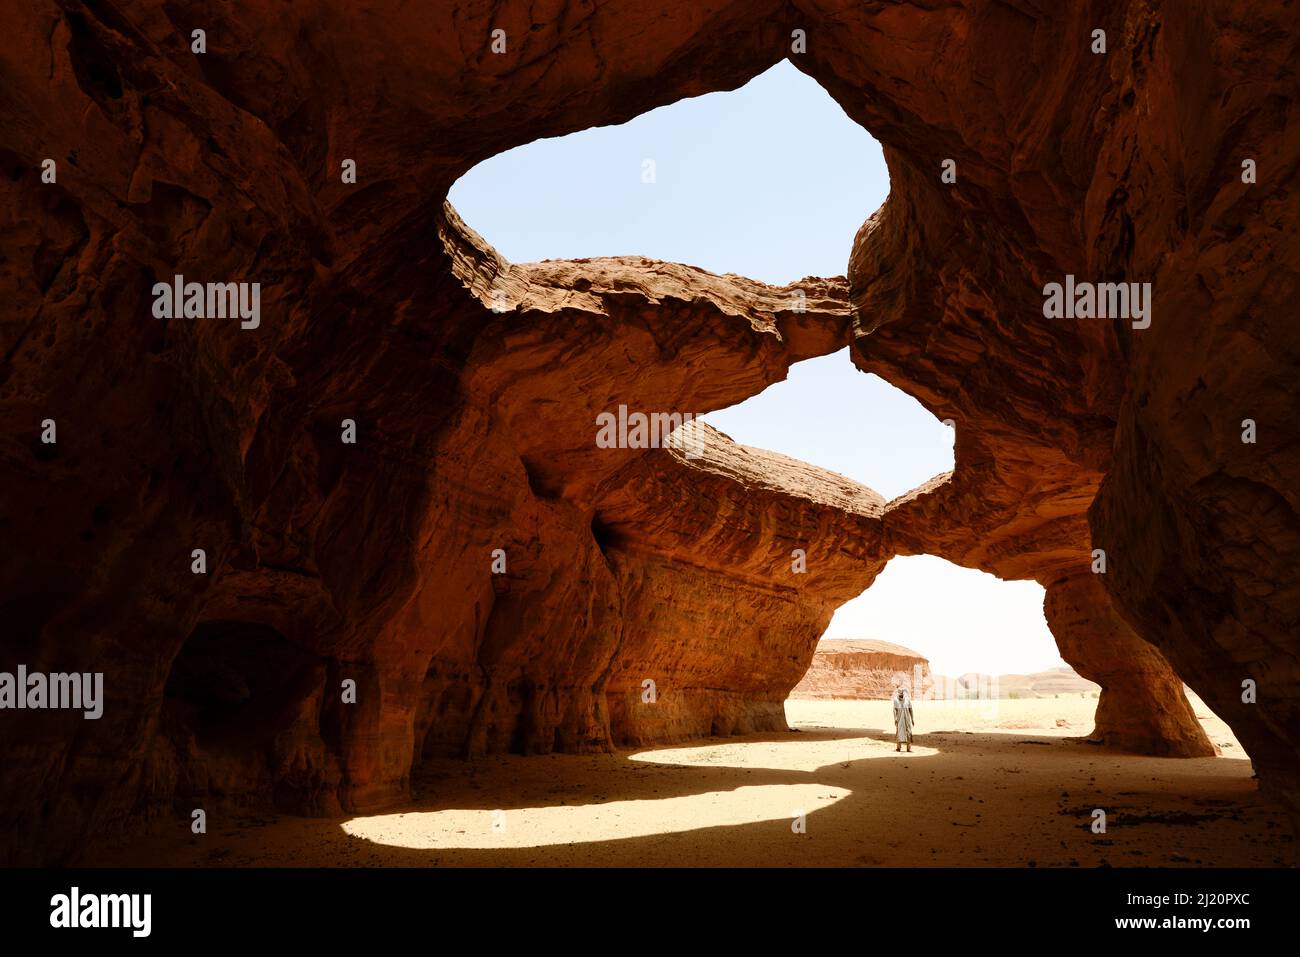 Erosion des Sandsteinhöhlendachs in der Sahara. Natur- und Kulturreservat Ennedi, UNESCO-Weltkulturerbe, Tschad. September 2019. Stockfoto